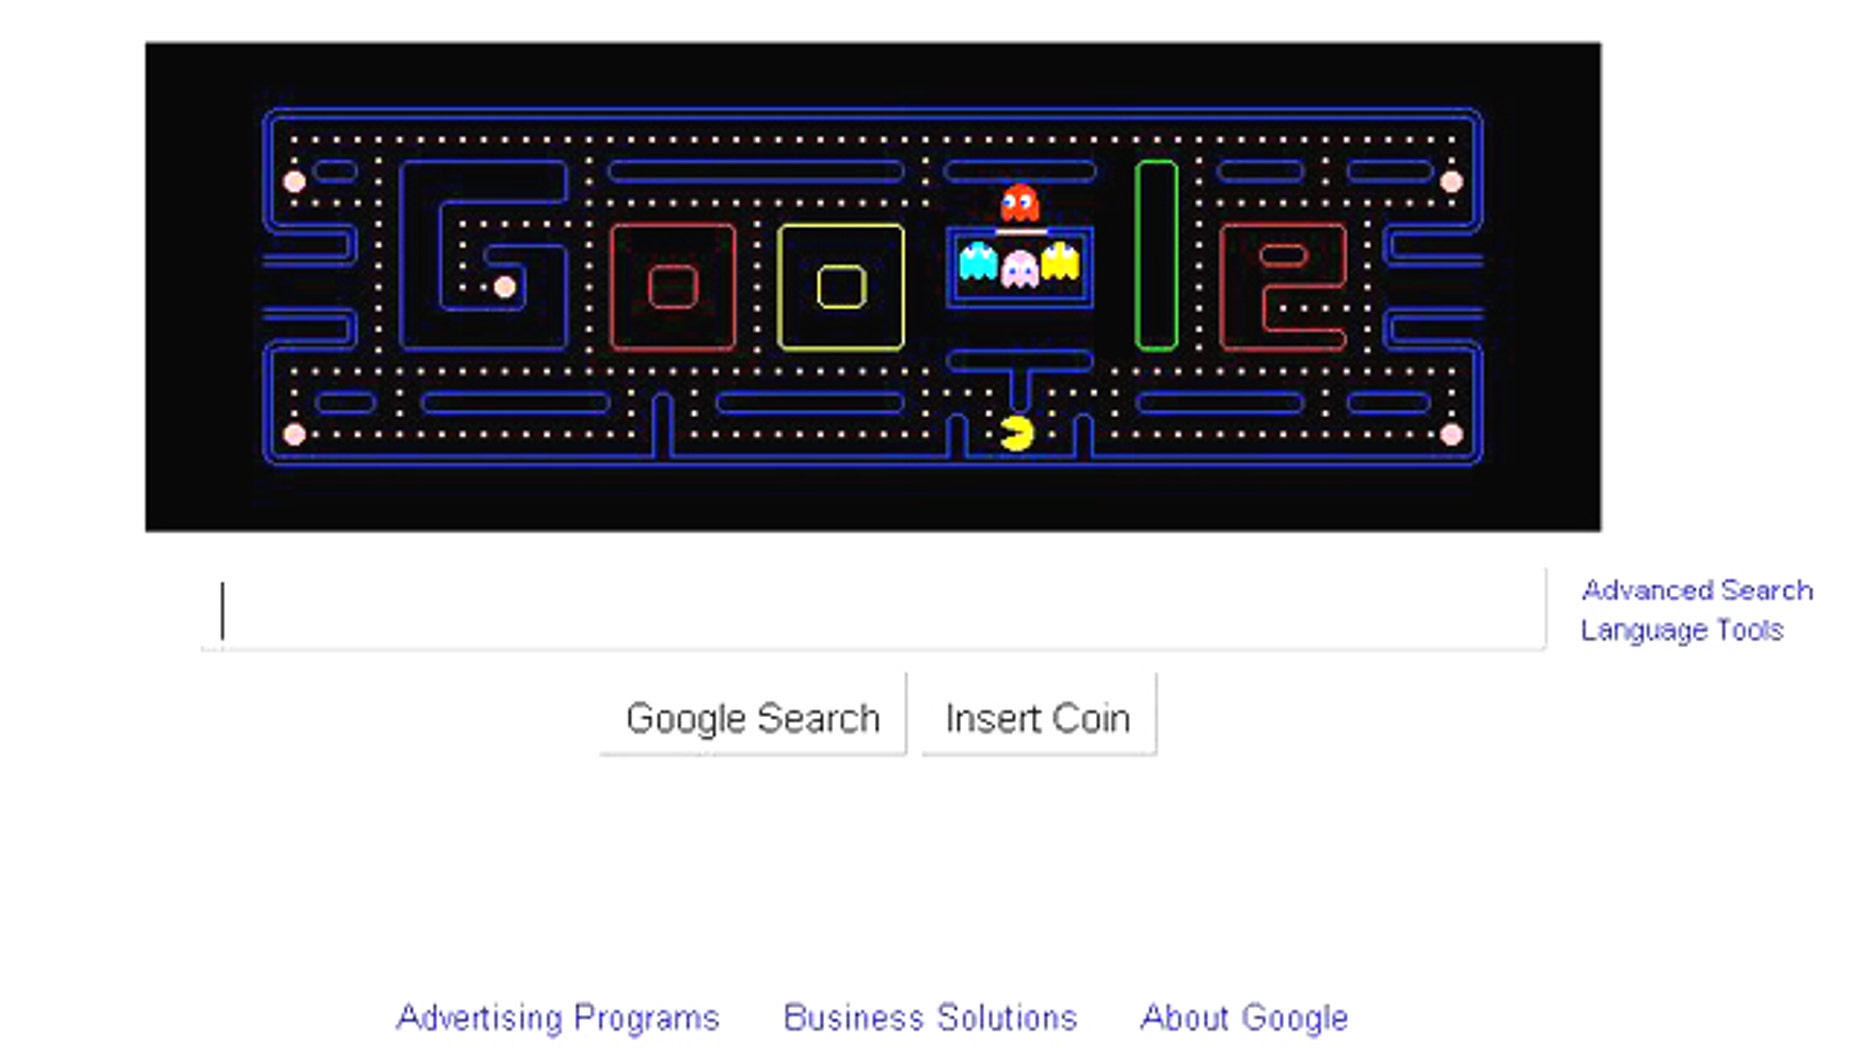 google doodle pac man